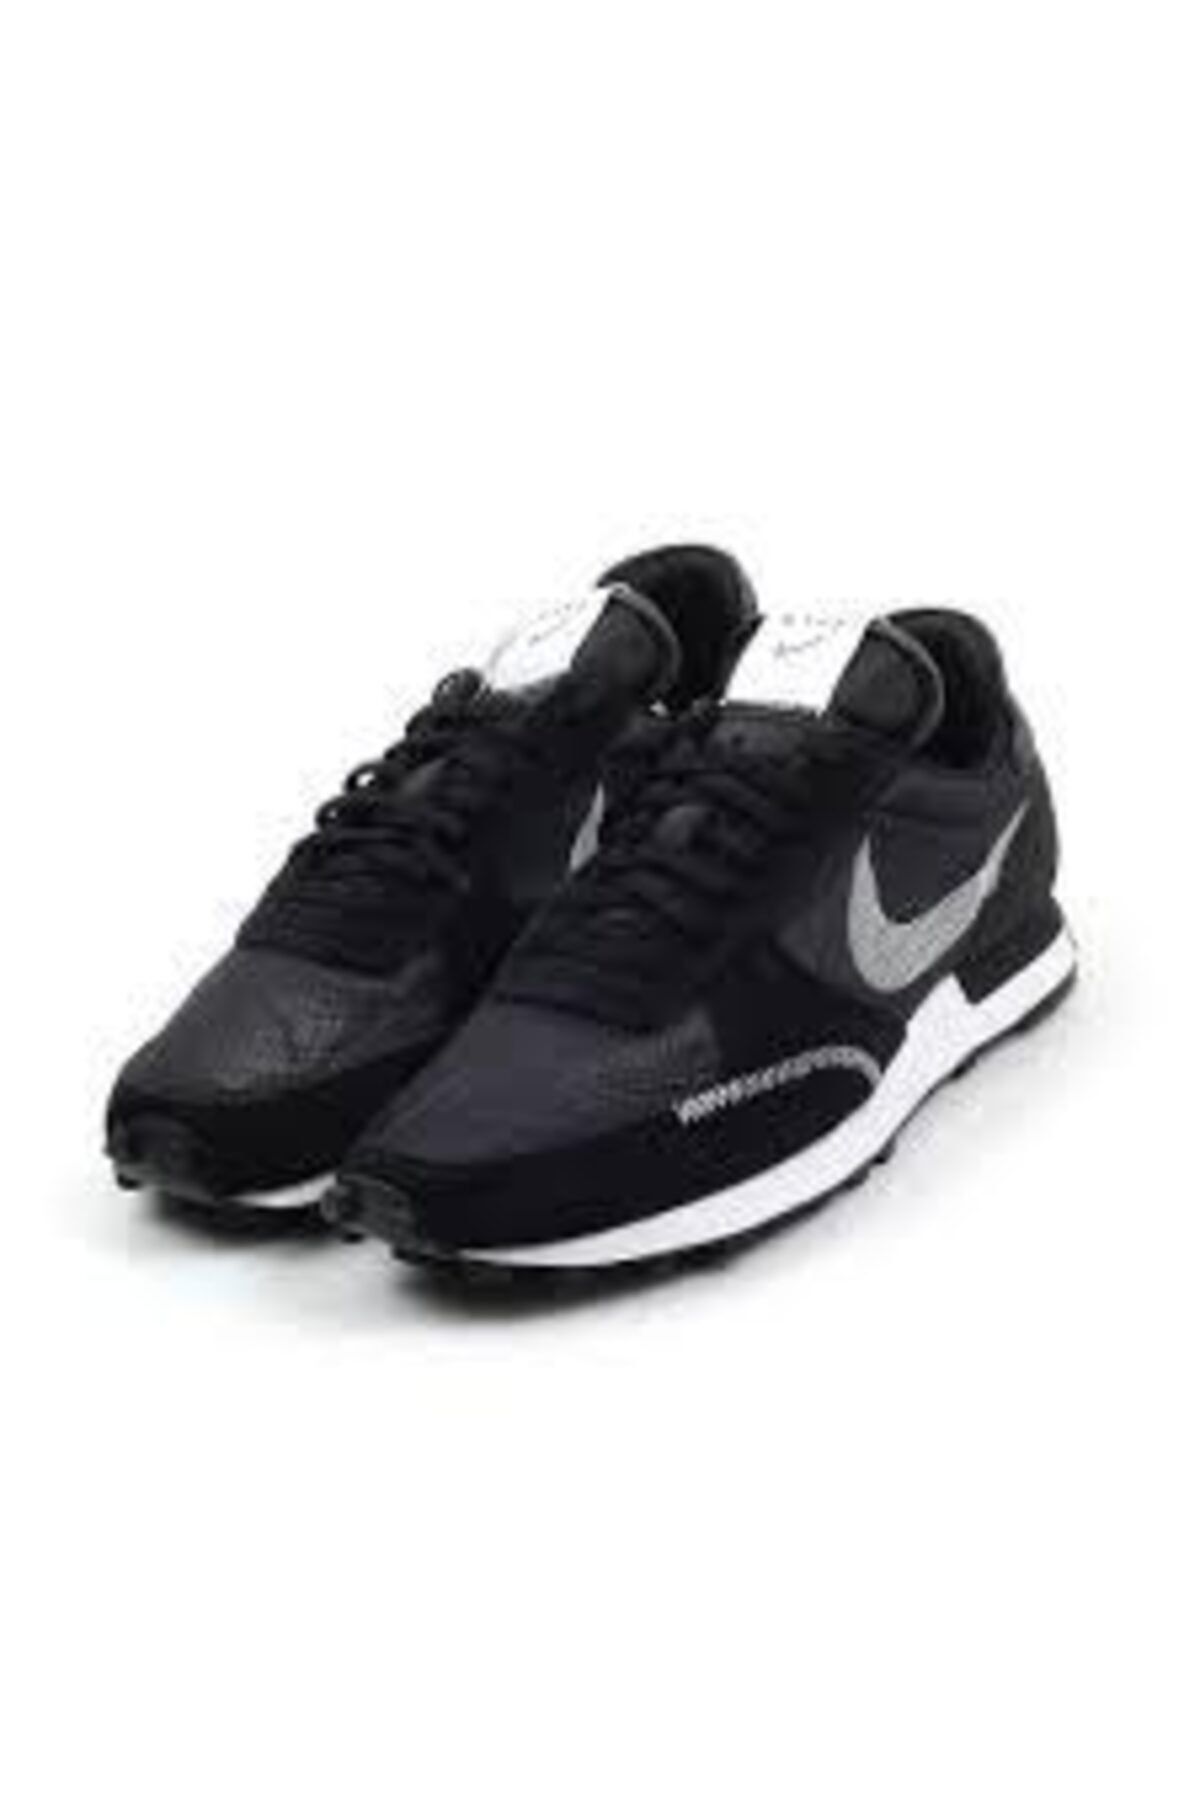 Nike Nıke -ayakkabi-gunluk-dbreak-type-cj1156-003